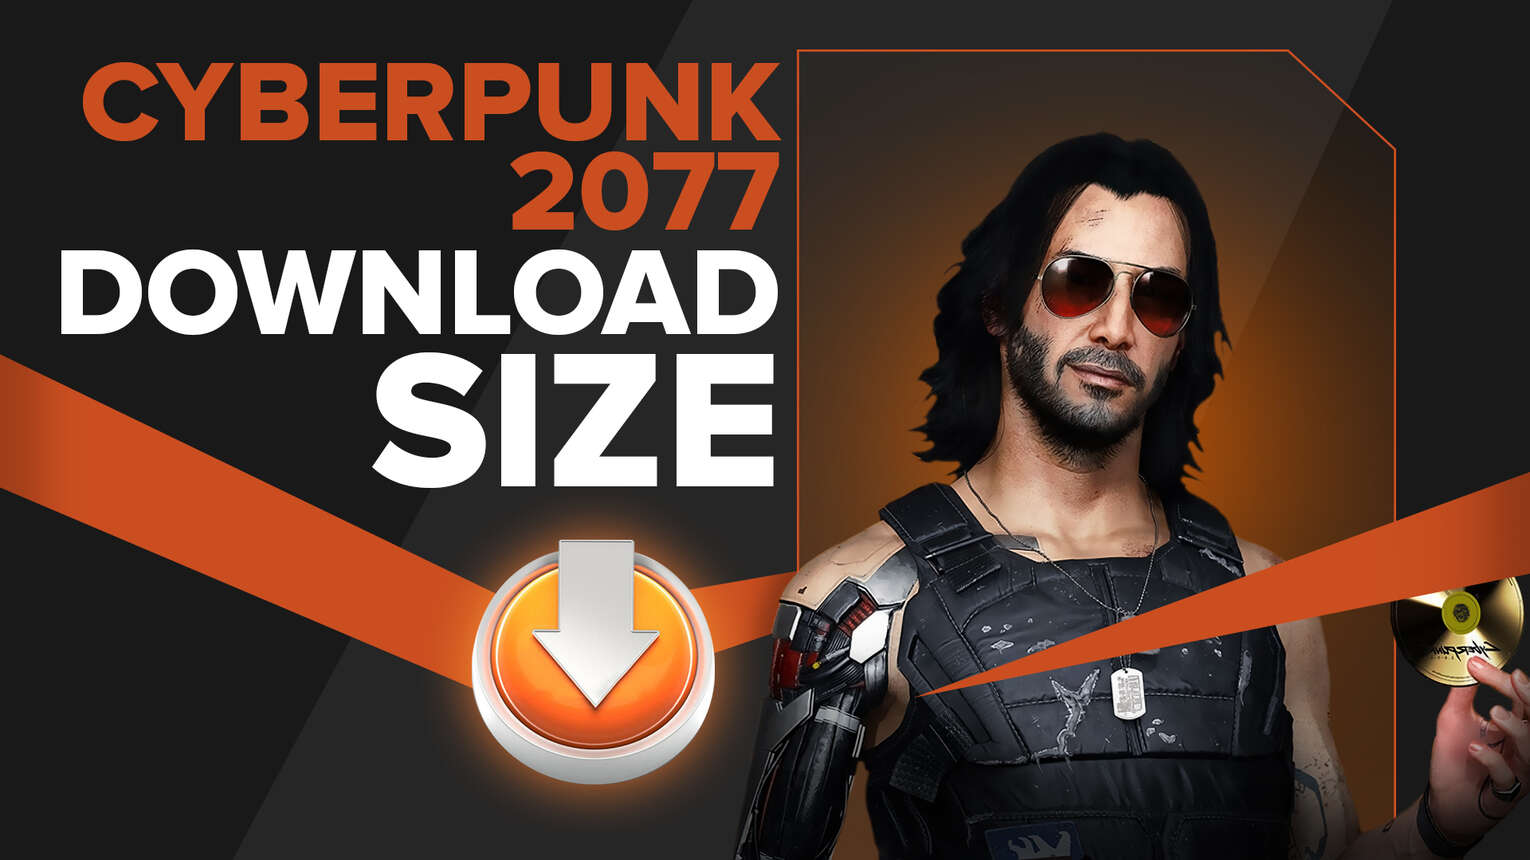 Quelle est la taille de téléchargement de Cyberpunk 2077?